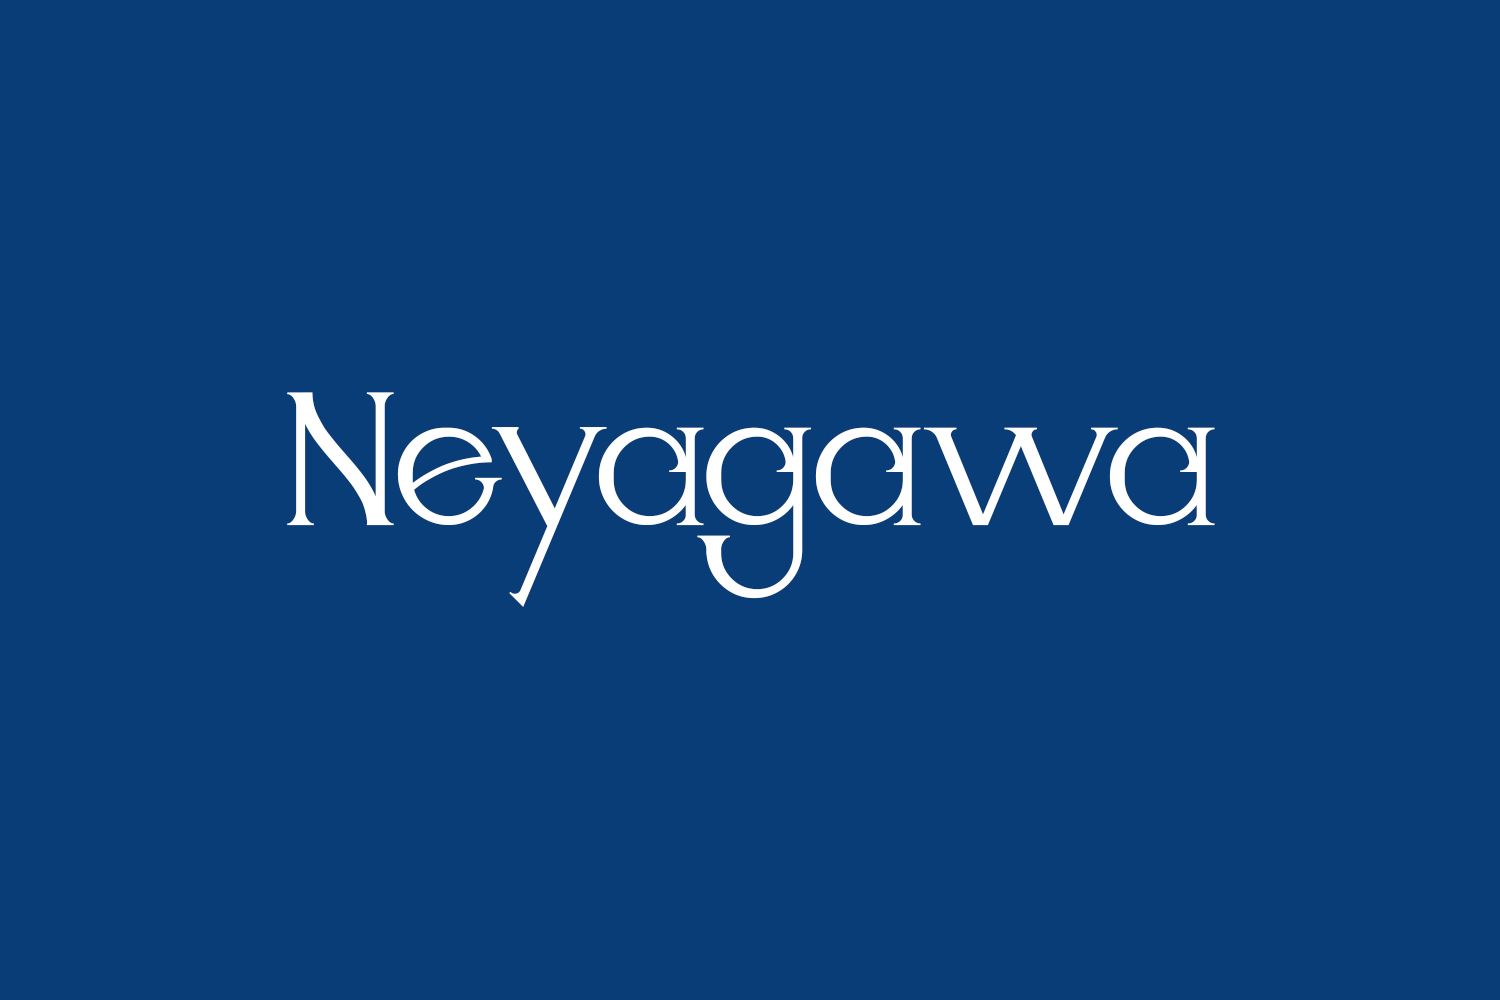 Neyagawa Free Font